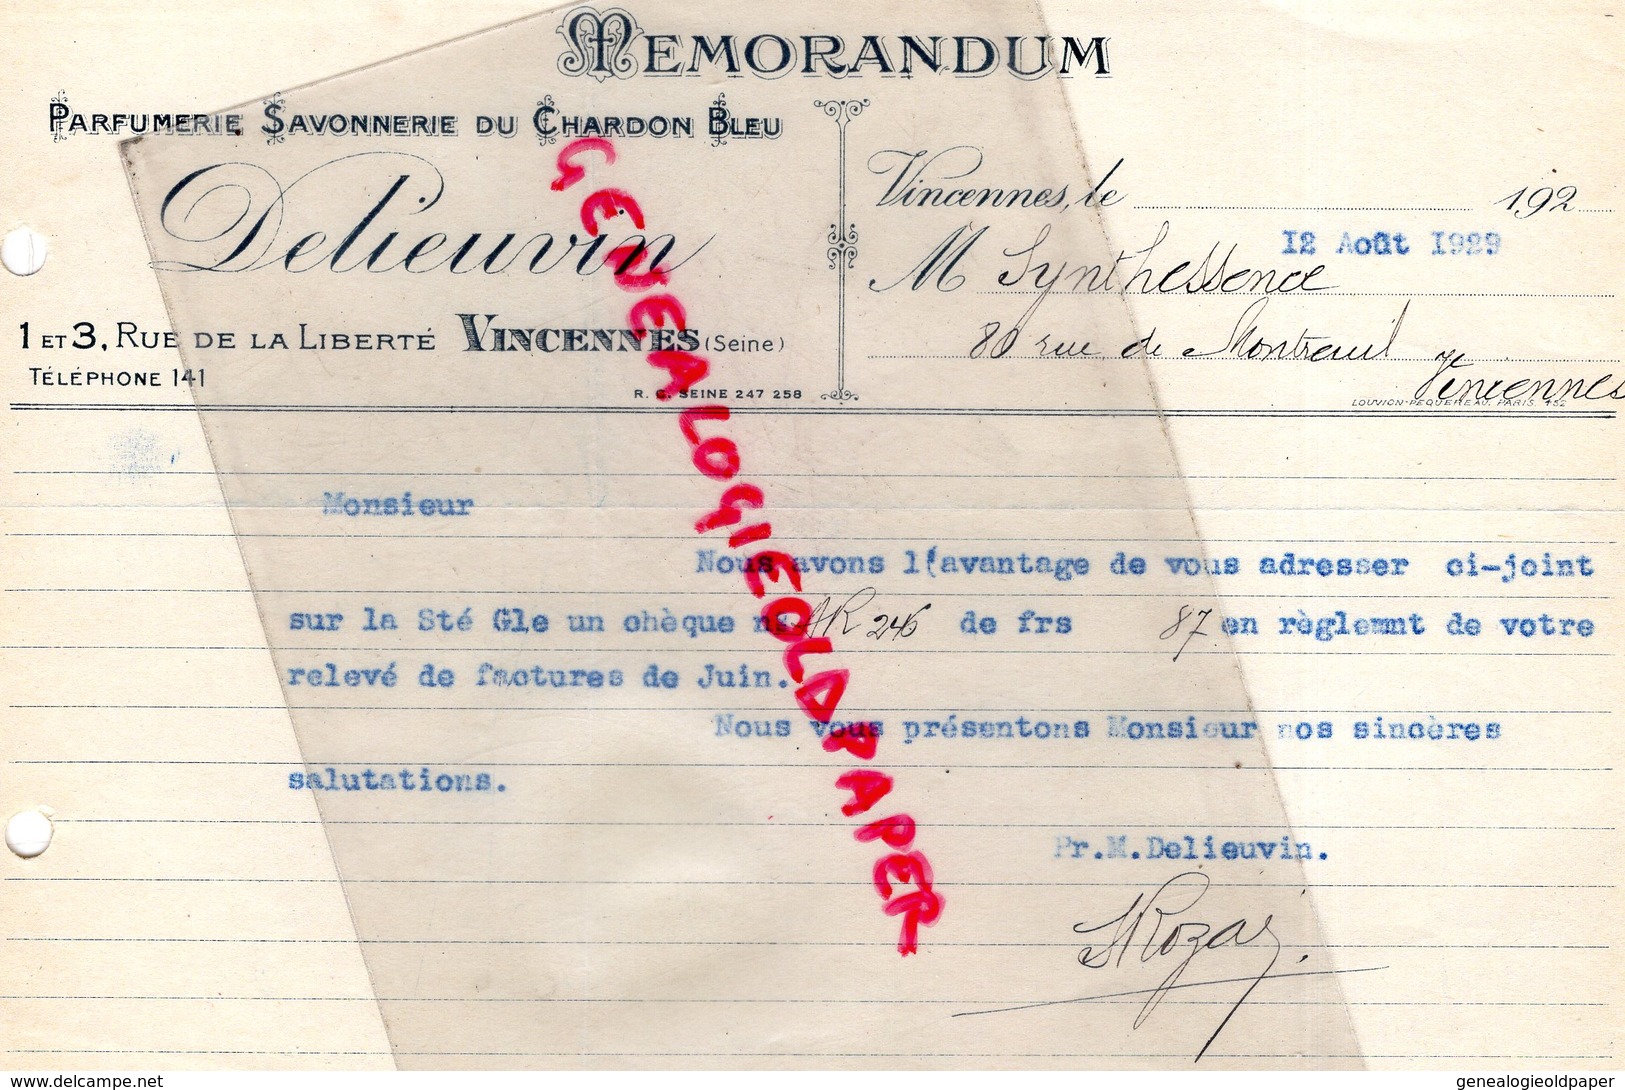 94- VINCENNES- MEMORANDUM DELIEUVIN- PARFUMERIE SAVONNERIE DU CHARDON BLEU- PARFUM -1 RUE LIBERTE- 1929 - Droguerie & Parfumerie